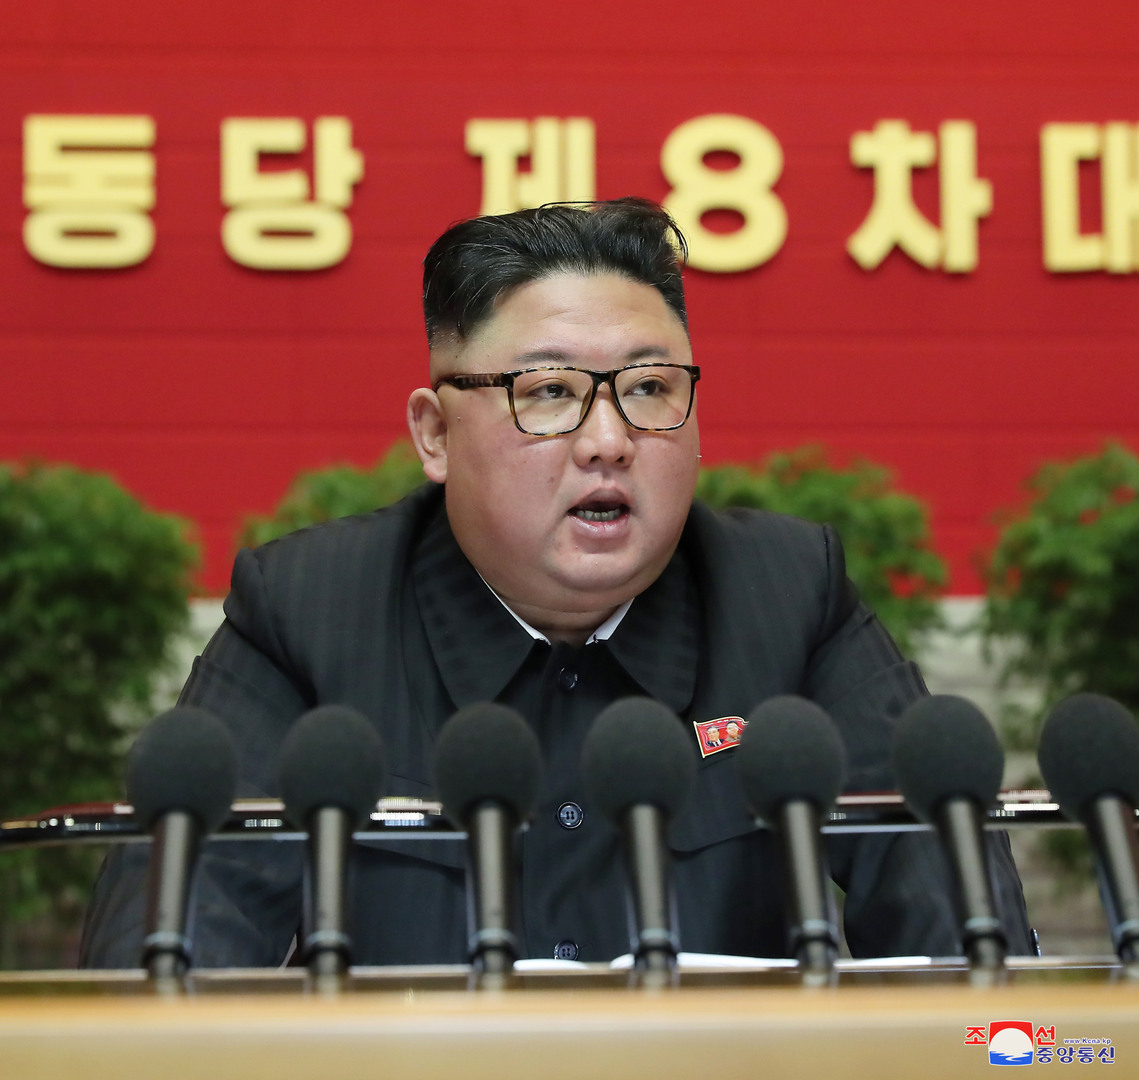 شقيقة الزعيم الكوري الشمالي تهدد باستخدام أسلحة نووية ضد كوريا الجنوبية